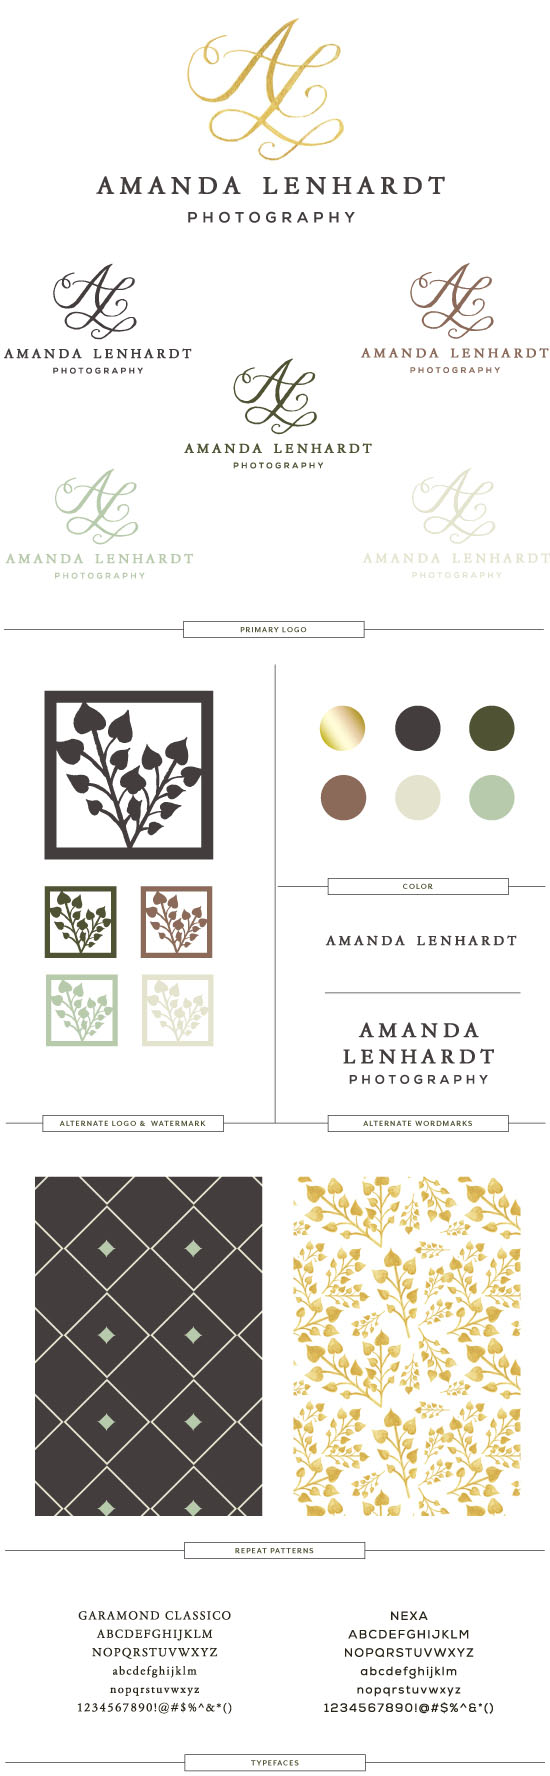 Amanda Lenhardt Branding | PINEGATE ROAD